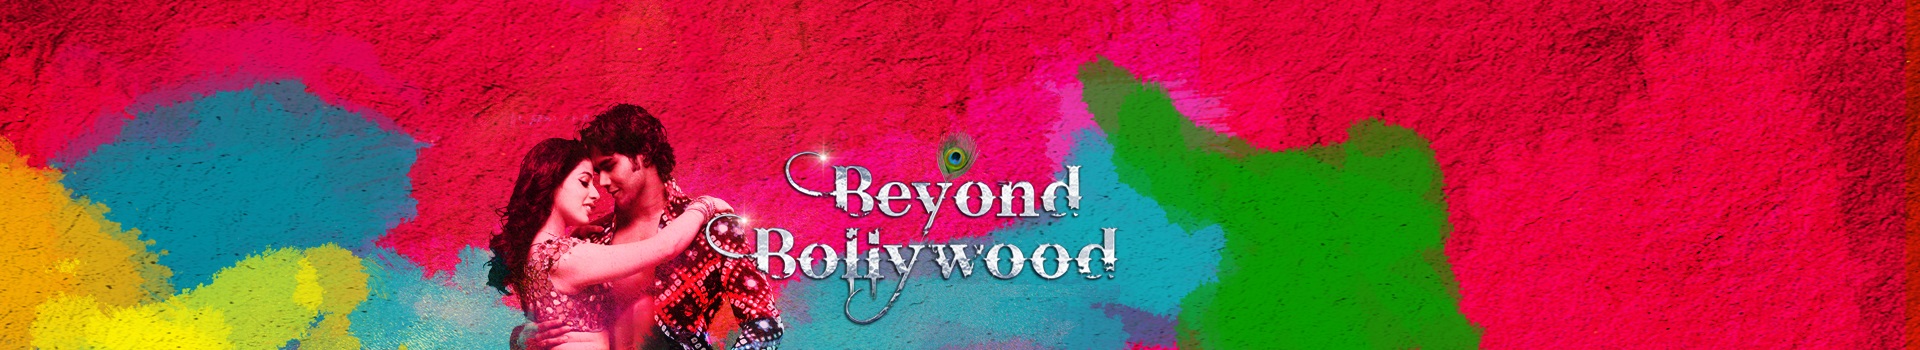 Beyond Bollywood banner image